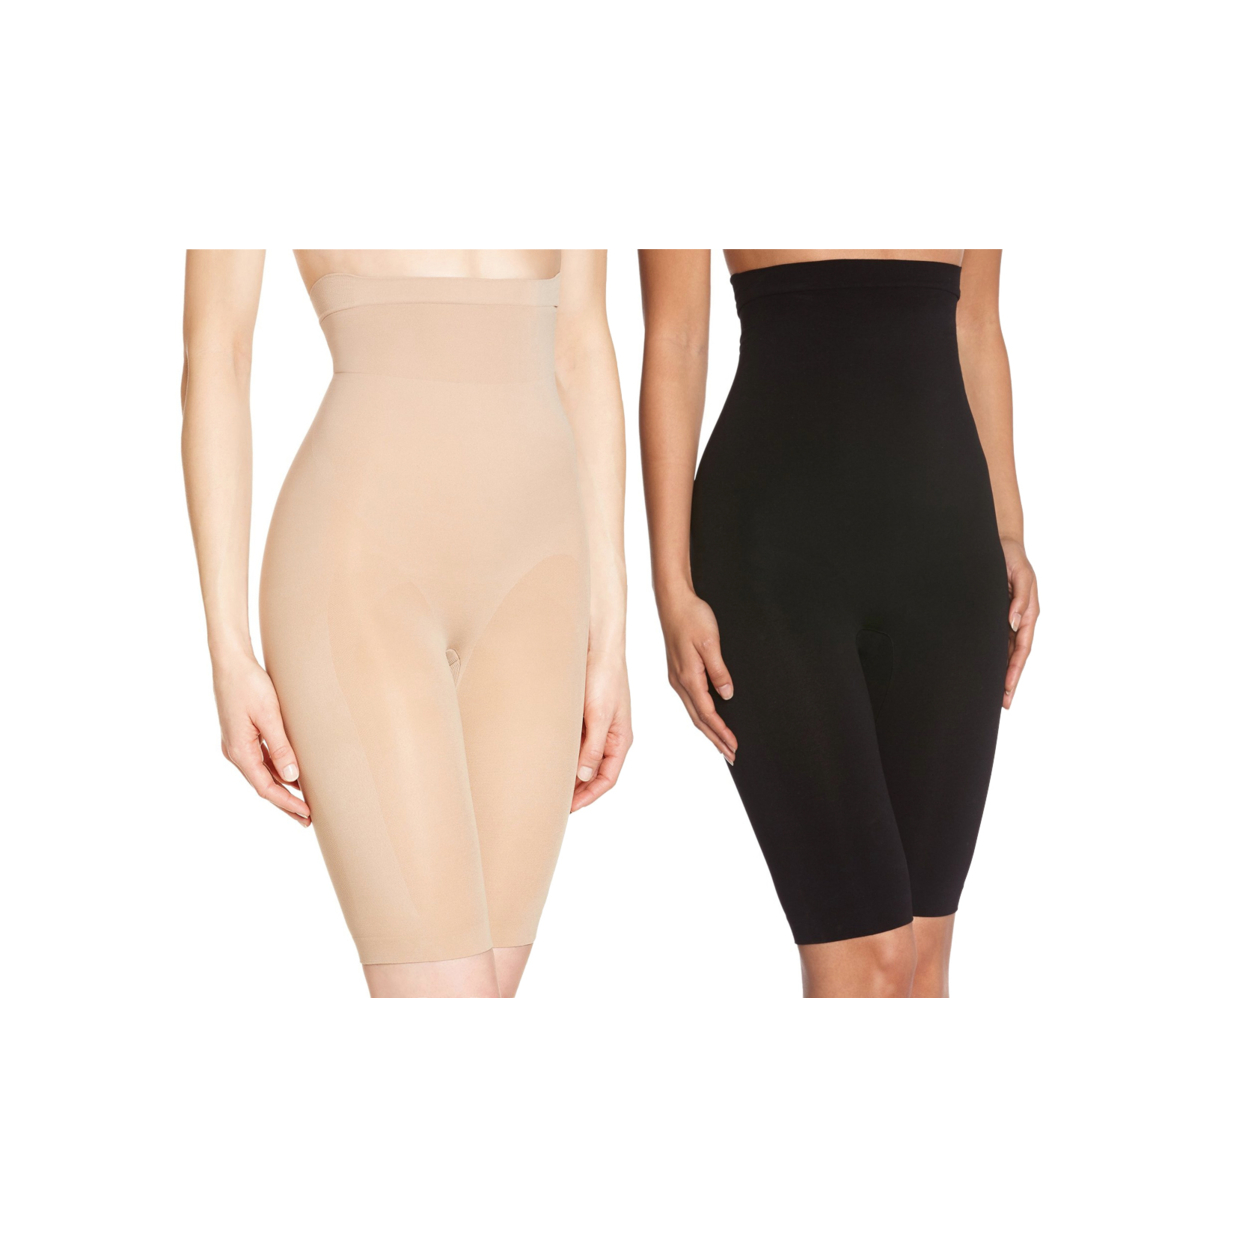 2 Pack Of Women's Long Leg Waist Control Body Shaper - Beige & Black, S/M